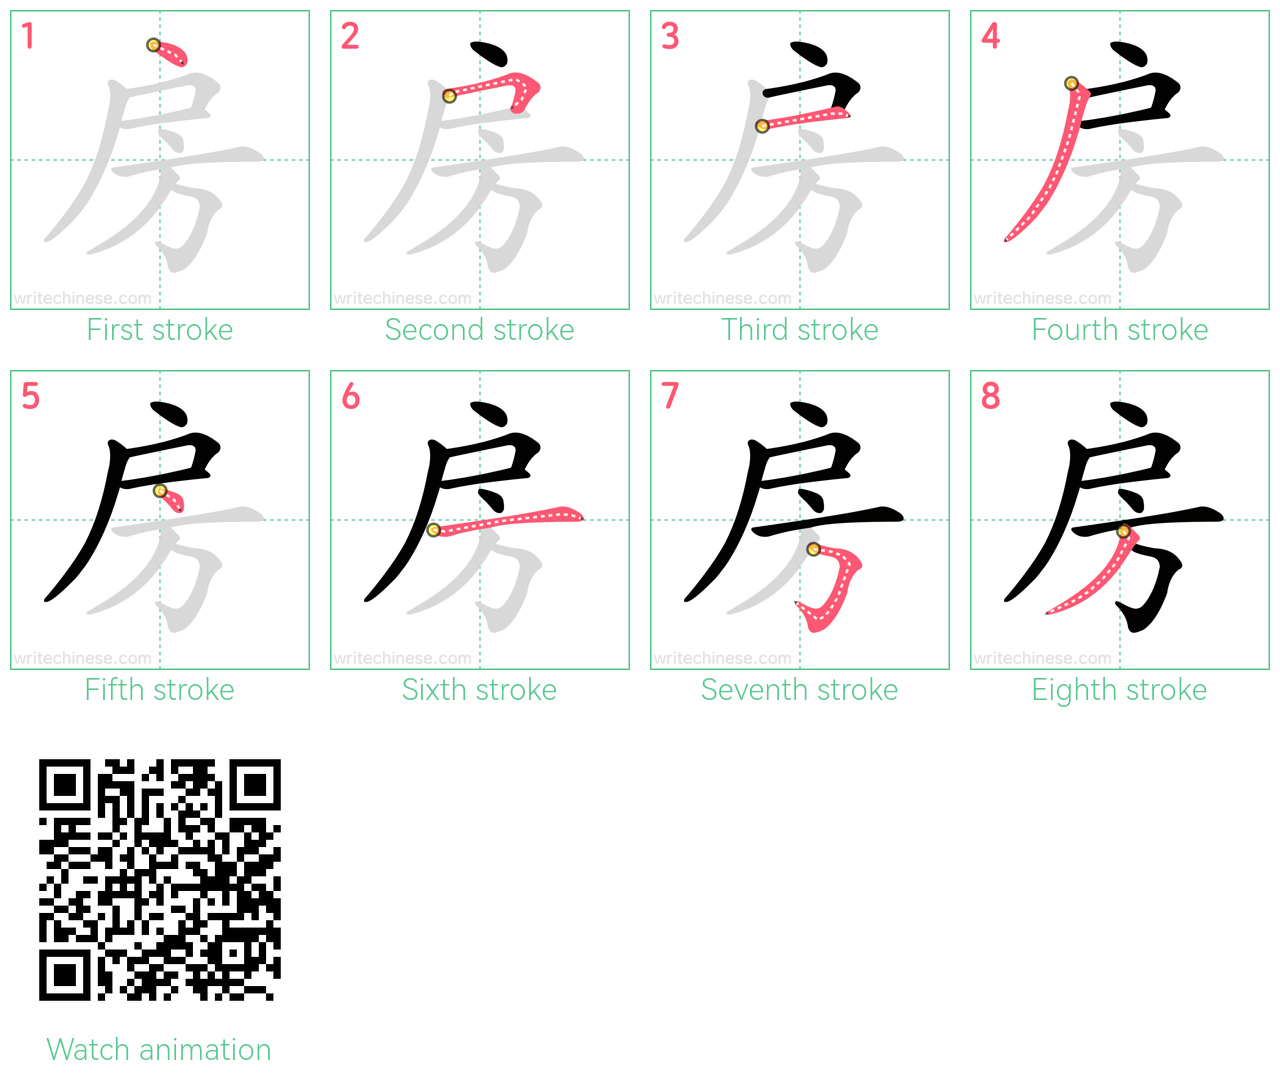 房 step-by-step stroke order diagrams